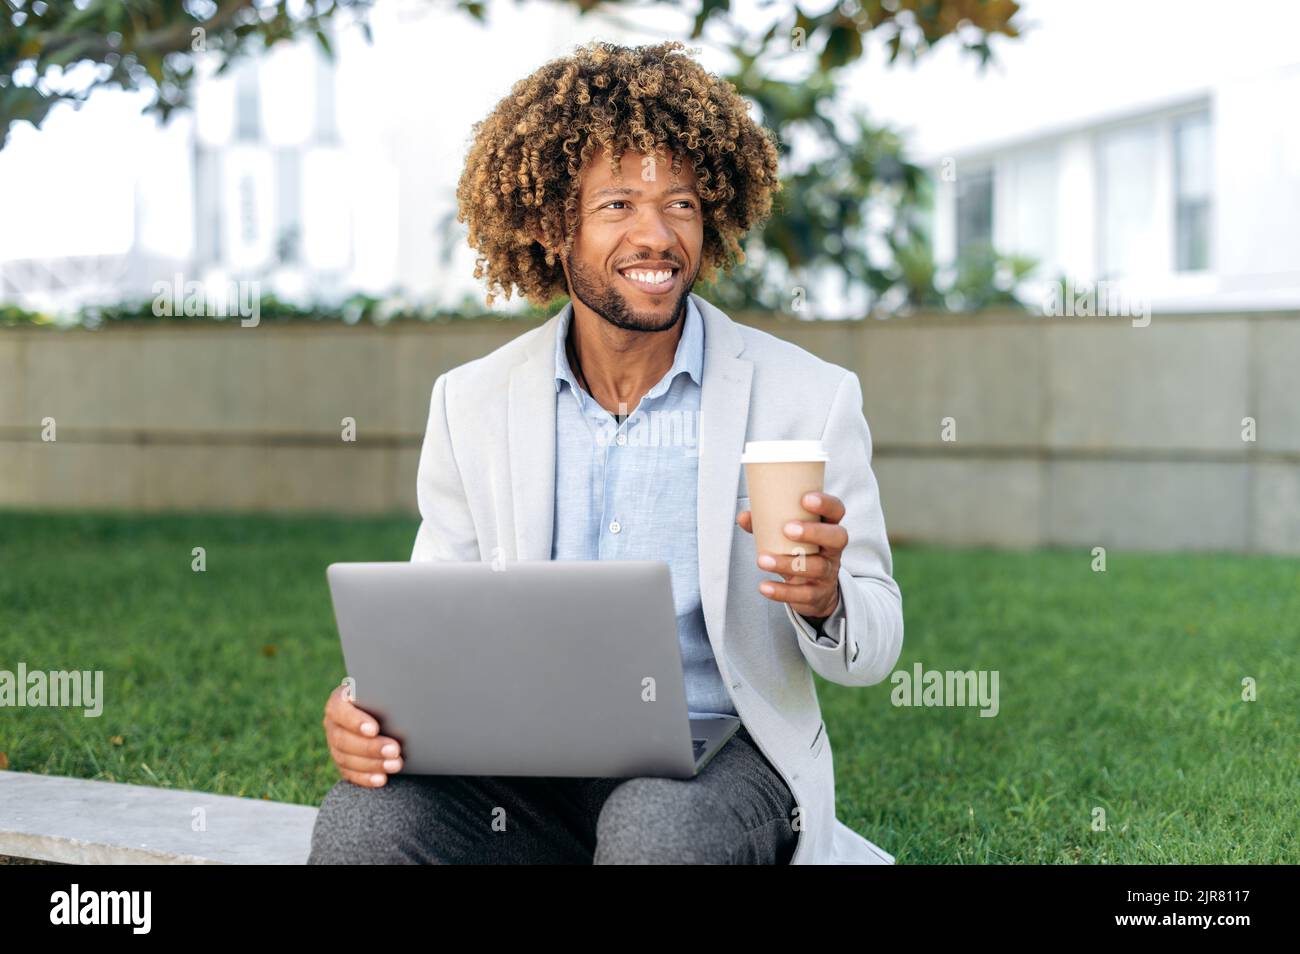 Positiv schöner erfolgreicher brasilianischer oder spanischer Mann, Firmenangestellter, Unternehmer, sitzt im Freien mit Laptop in den Händen, hält ein Glas Kaffee in der Hand, pausiert bei der Arbeit, schaut weg, lächelt Stockfoto